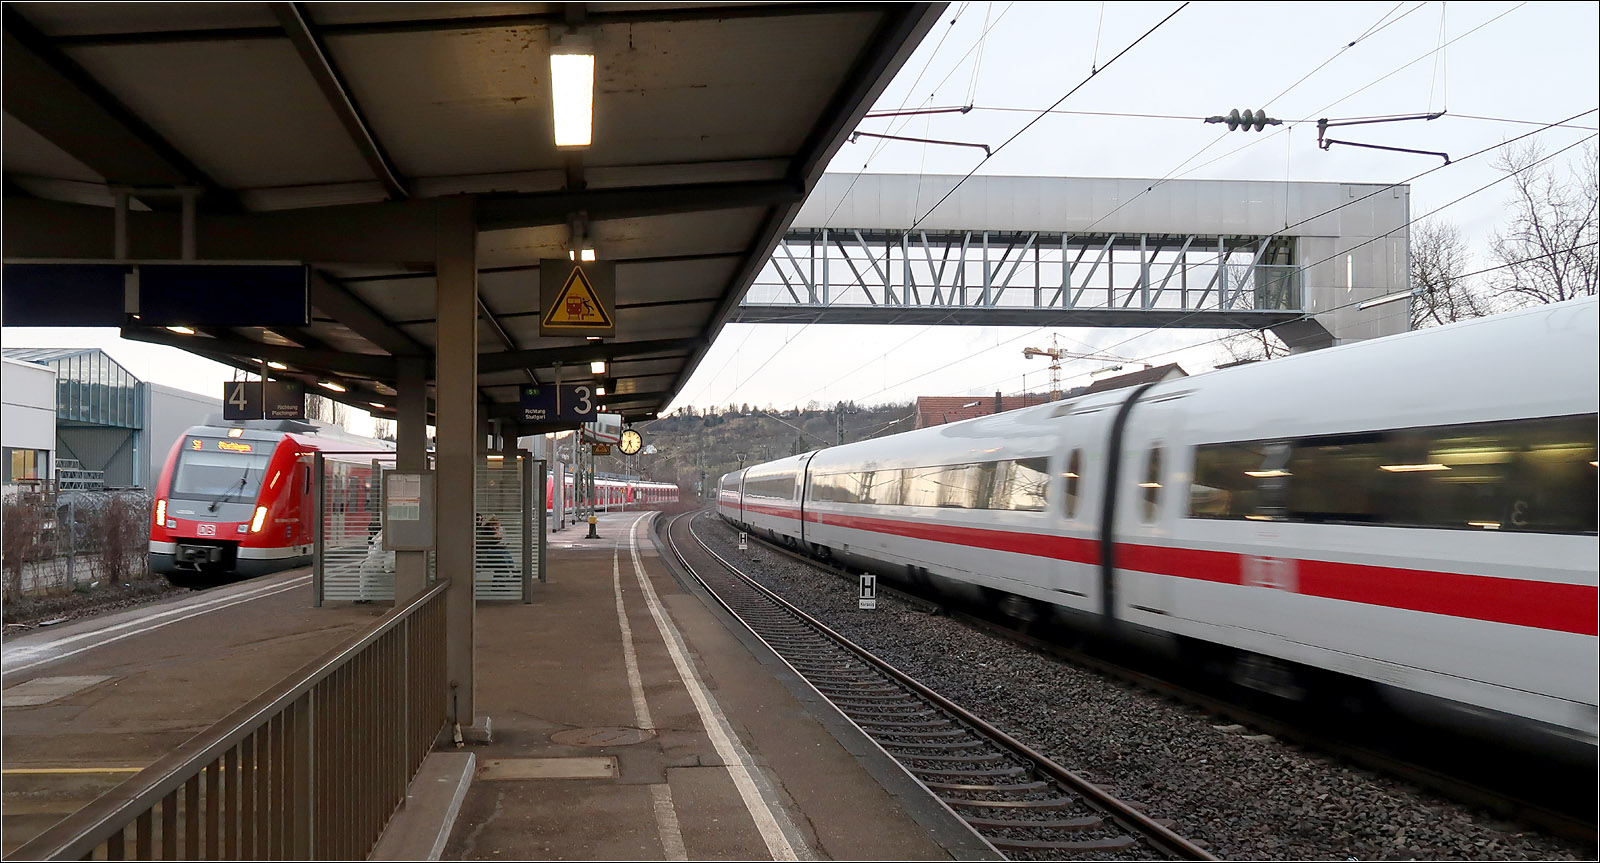 Einfahrt und Durchfahrt -

Ein S-Bahnzug fährt in den Bahnhof Altbach ein, während ein ICE auf den Fernbahngleisen durch die Station braust. Bei der Brücke im Hintergrund handelt es sich um eine Art Peoplemover, eine Aufzugskonstruktion, bei der die Kabine oben rüber fährt und auf der anderen Seite wieder runter.

28.02.2017 (M)